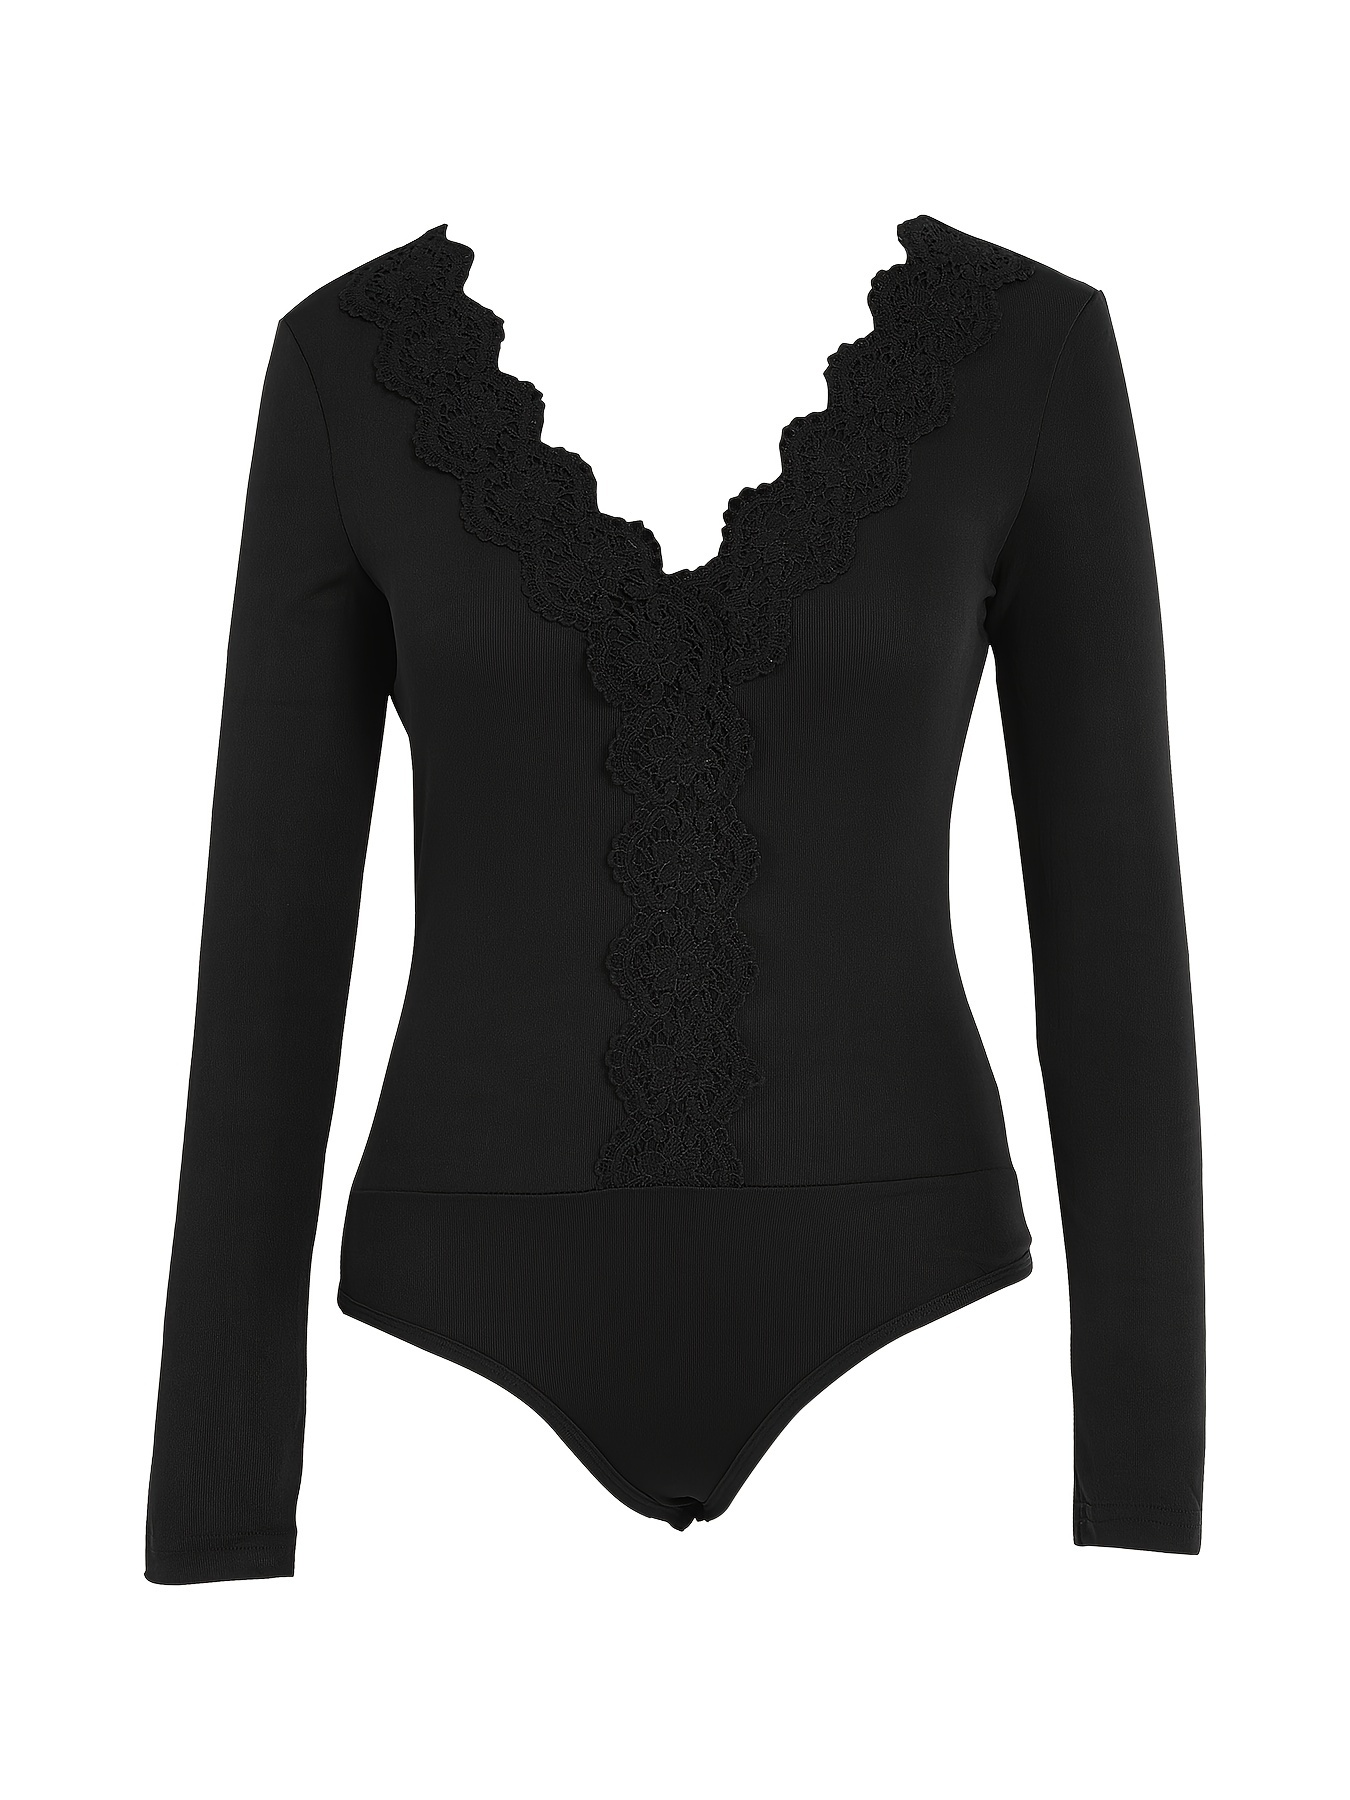 Douhoow Womens Black Lace Bodysuits Transparent Long Sleeve Deep V-neck  Jumpsuit